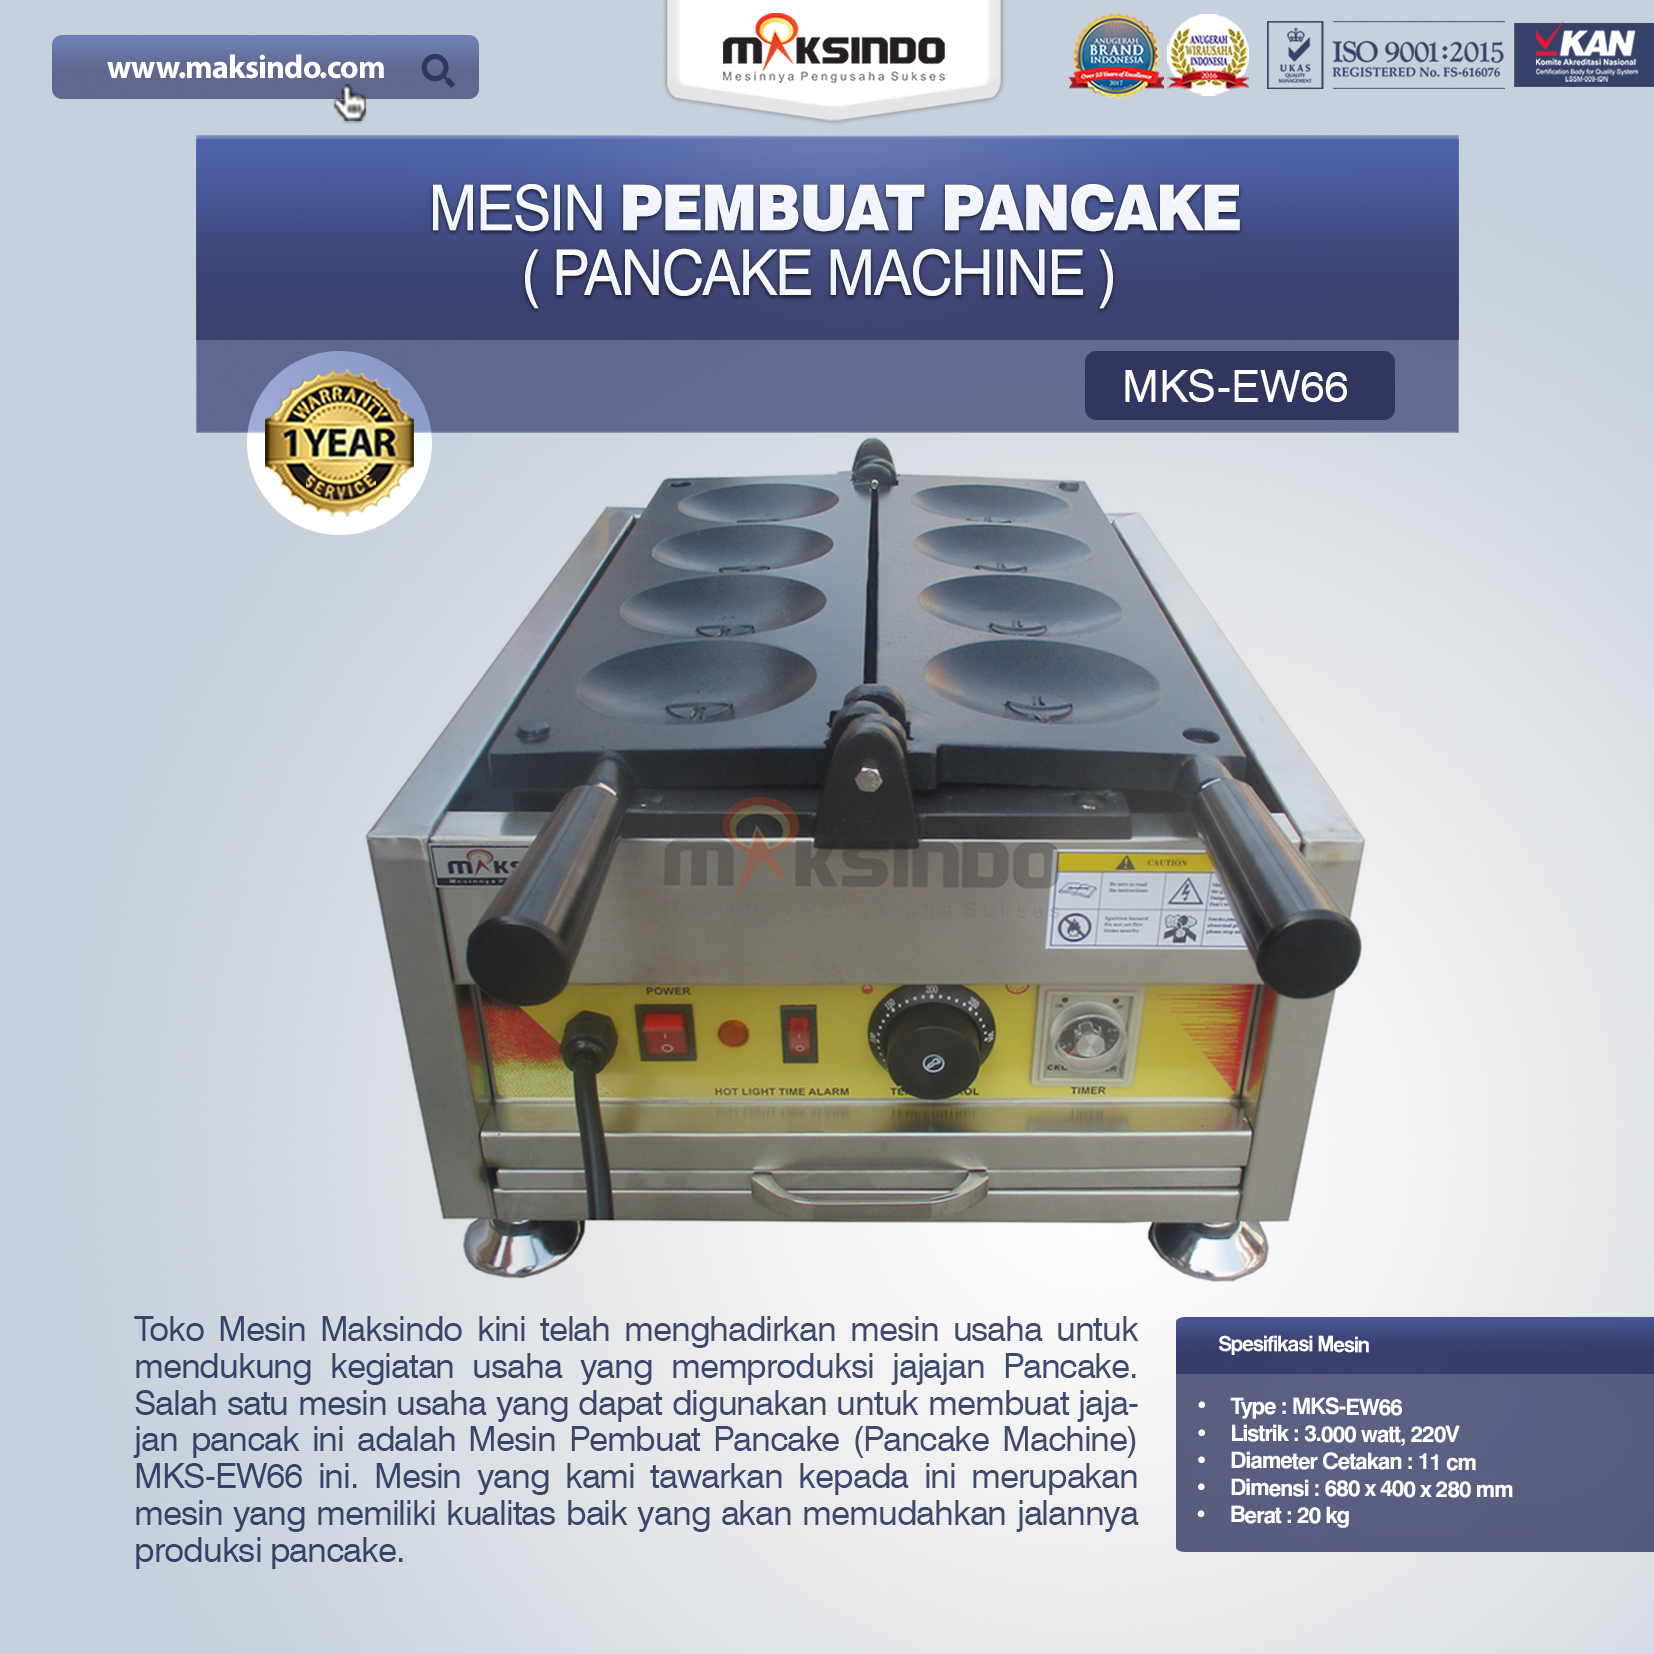 Jual Mesin Pembuat Pancake (Pancake Machine) MKS-EW66 di Tangerang